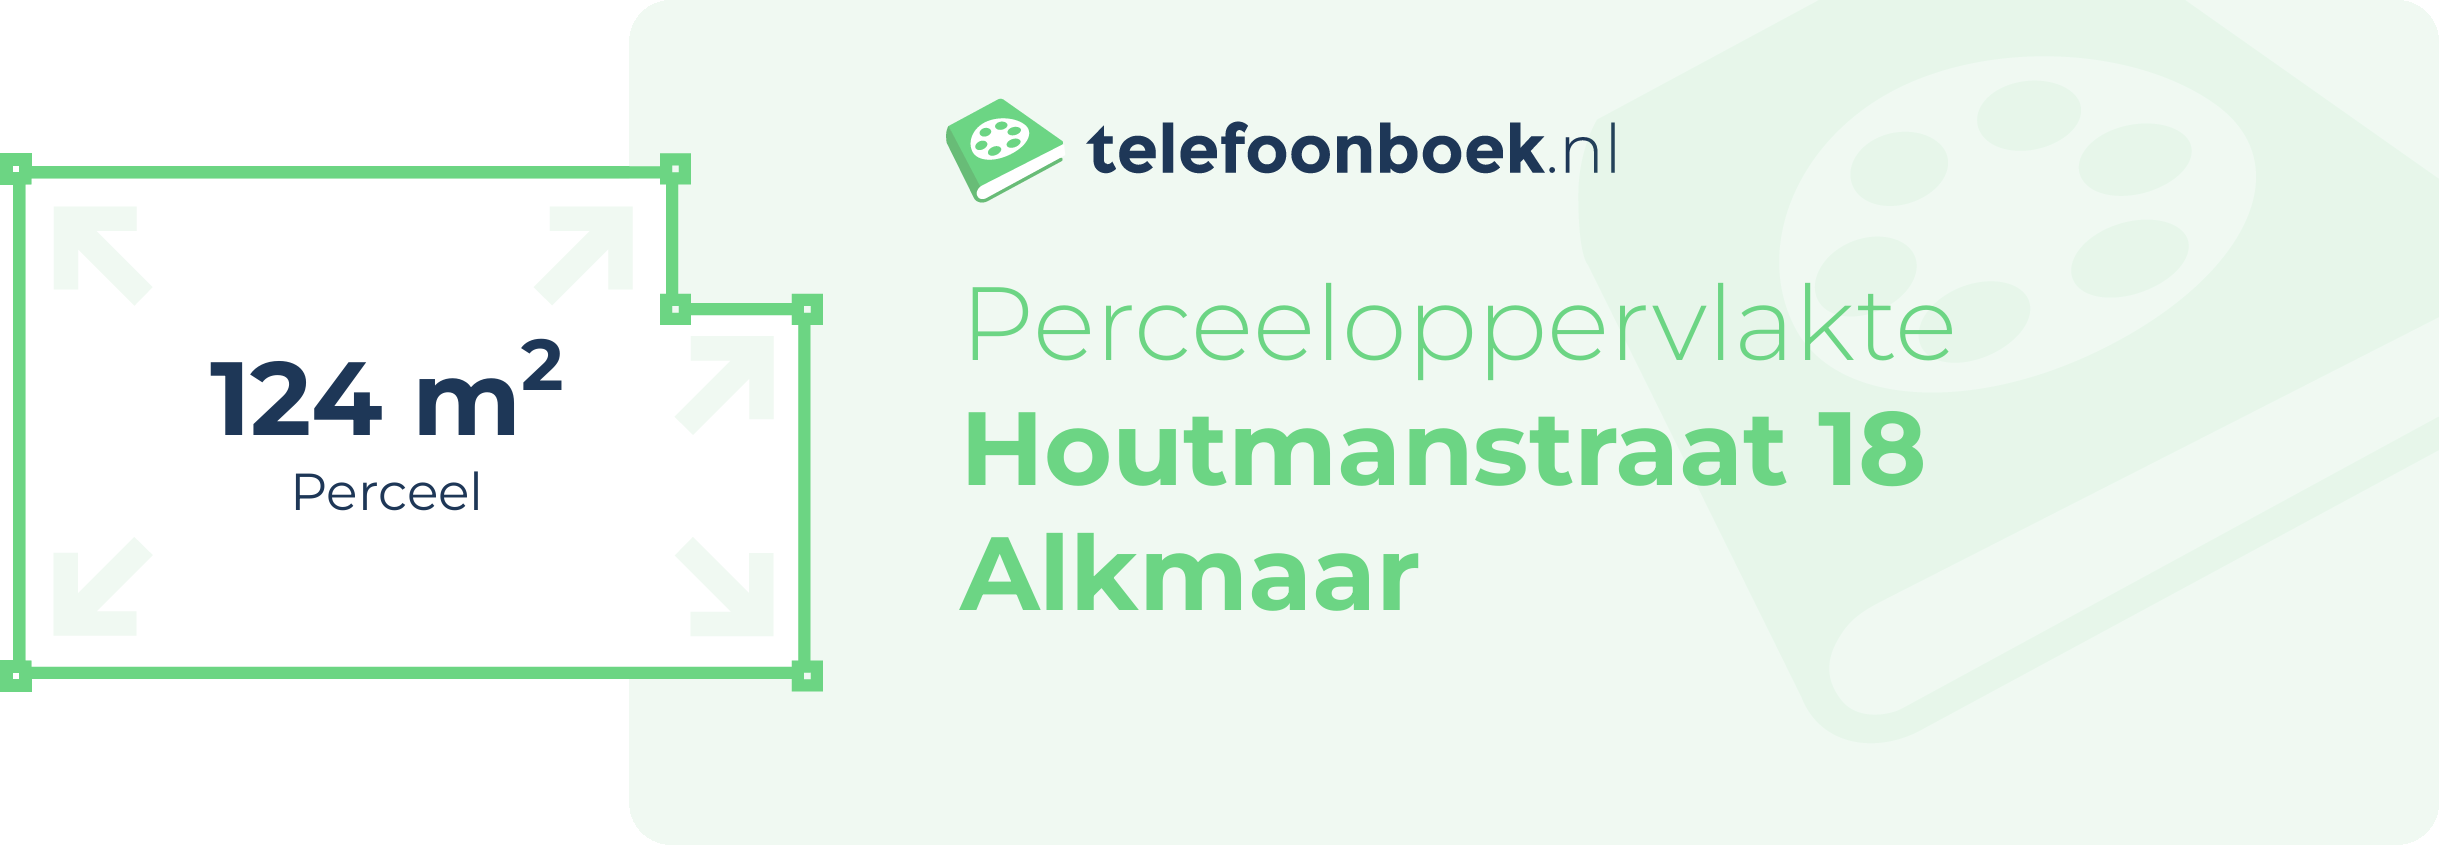 Perceeloppervlakte Houtmanstraat 18 Alkmaar